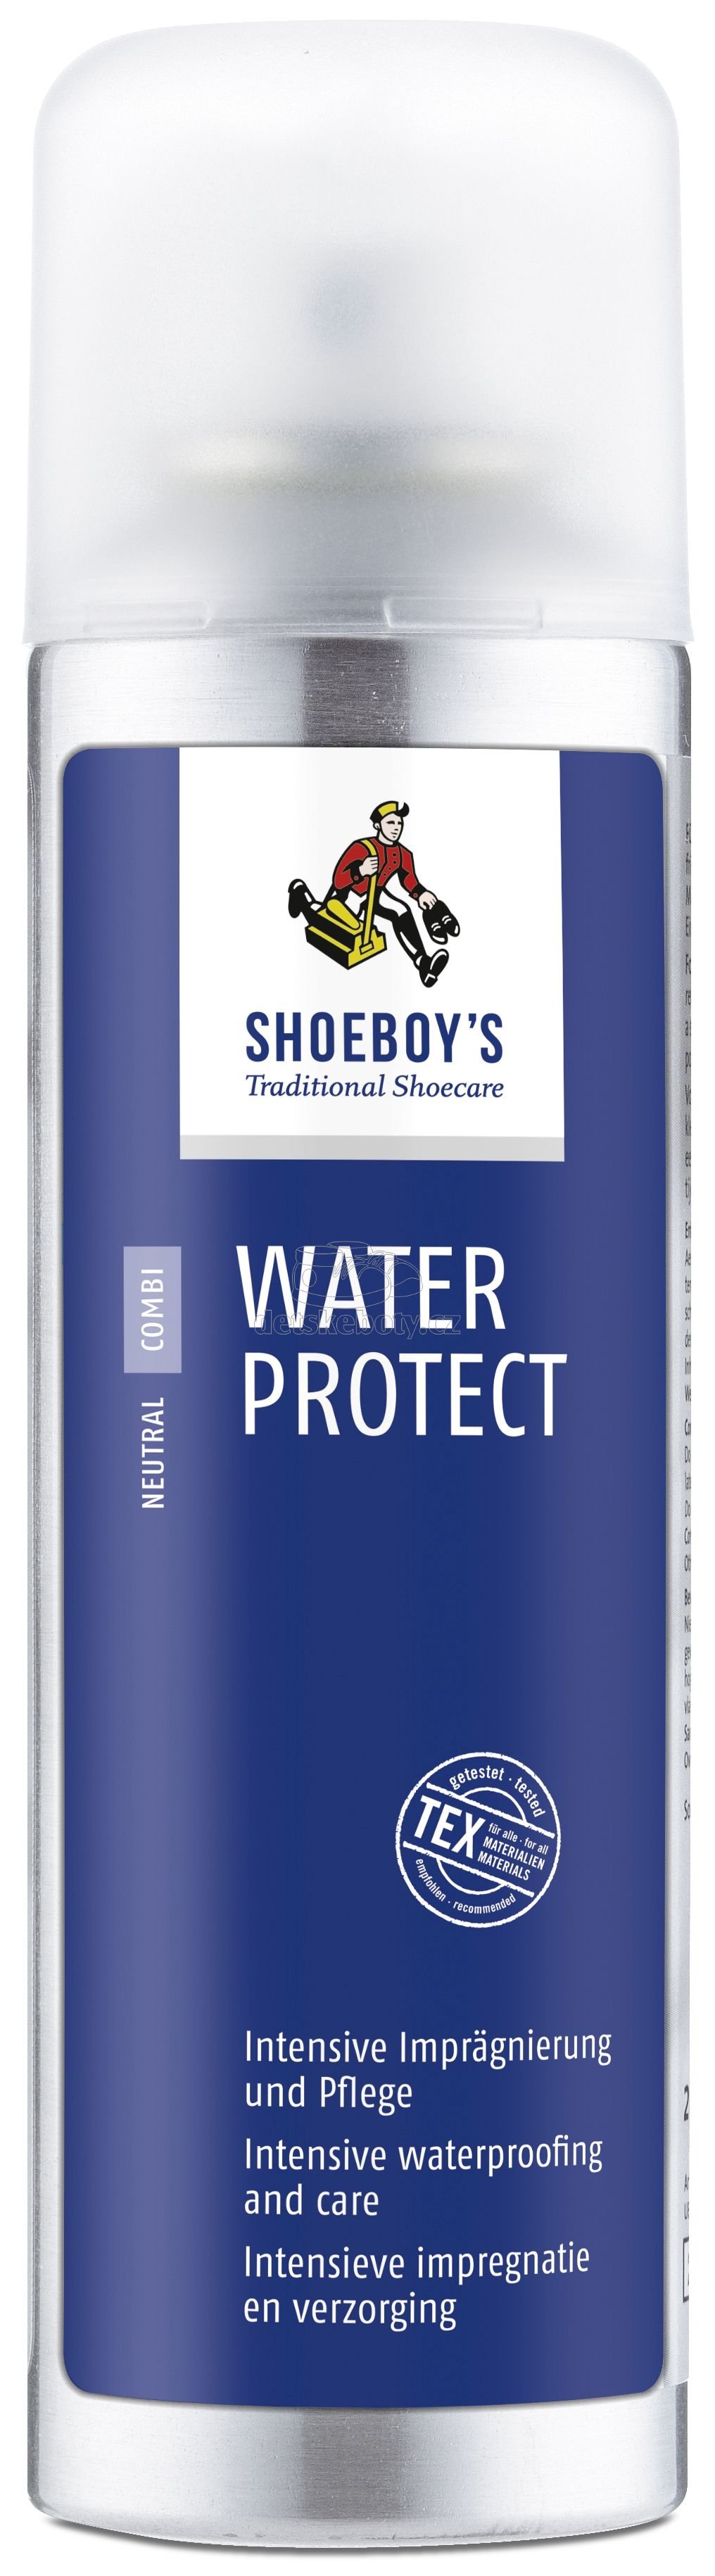 Impregnace Shoeboy's Water protect 200 ml s výživou